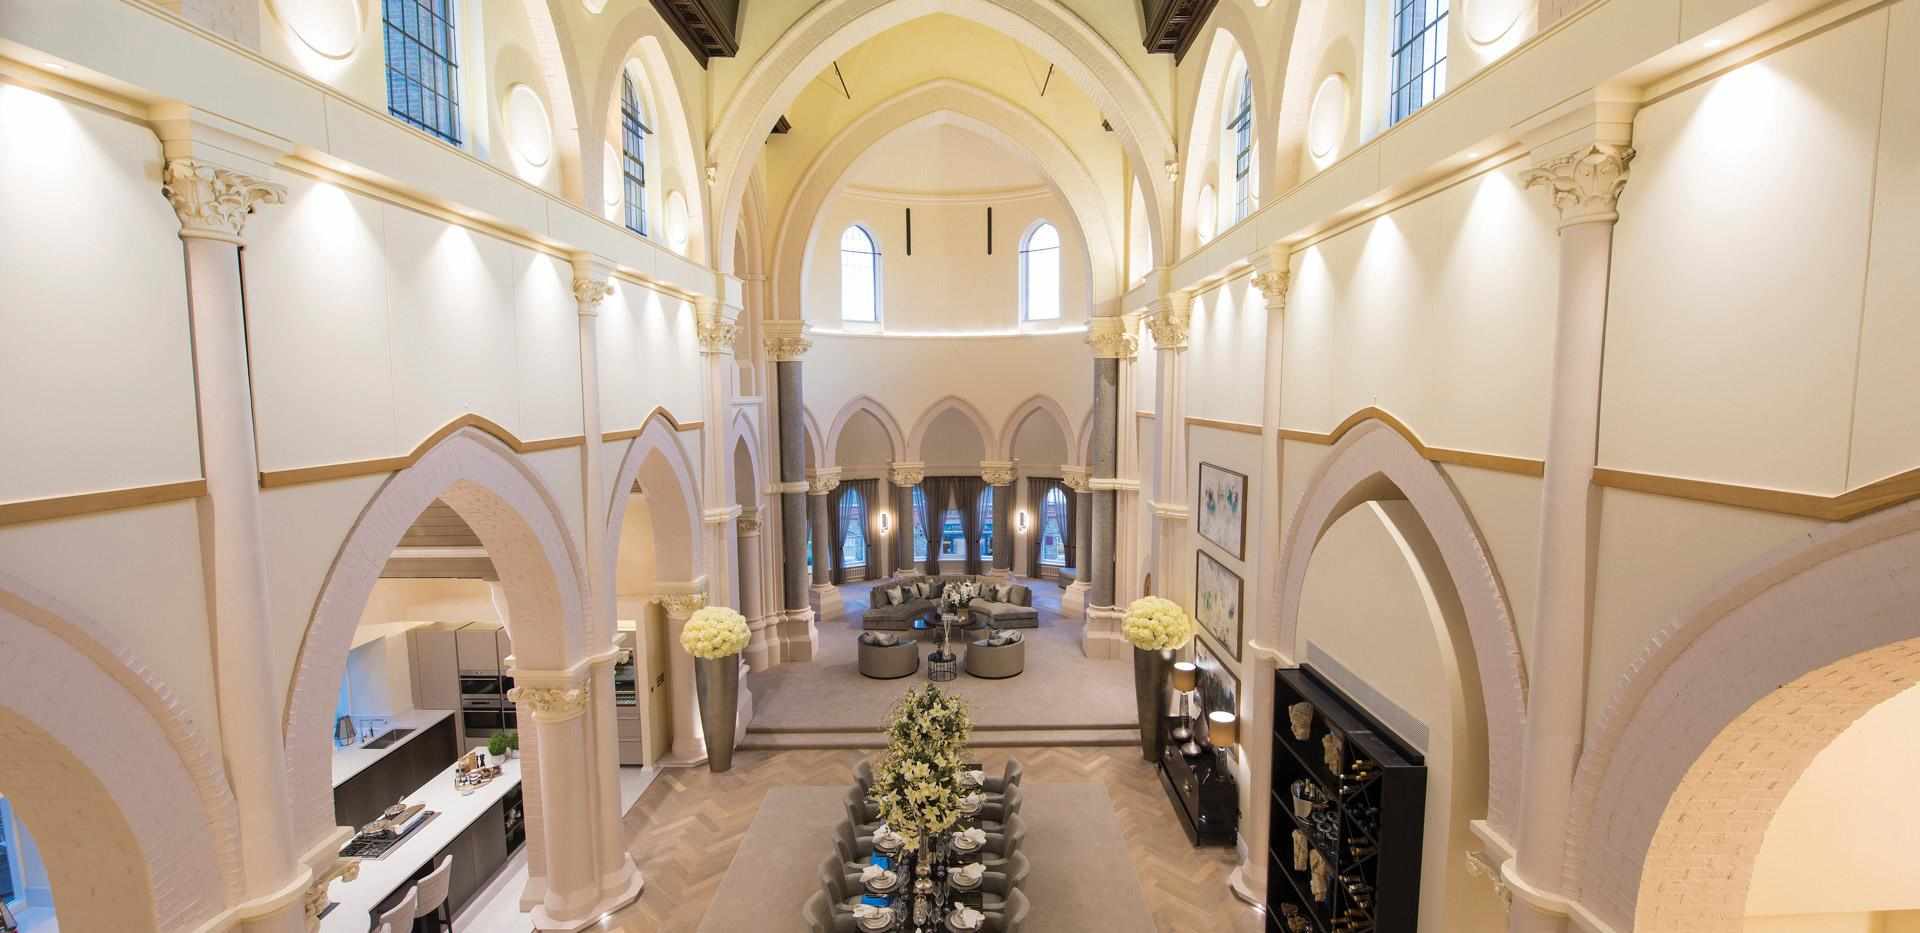 Berkeley, St Joseph's Gate, The Chapel, Interior, Guest Suite View